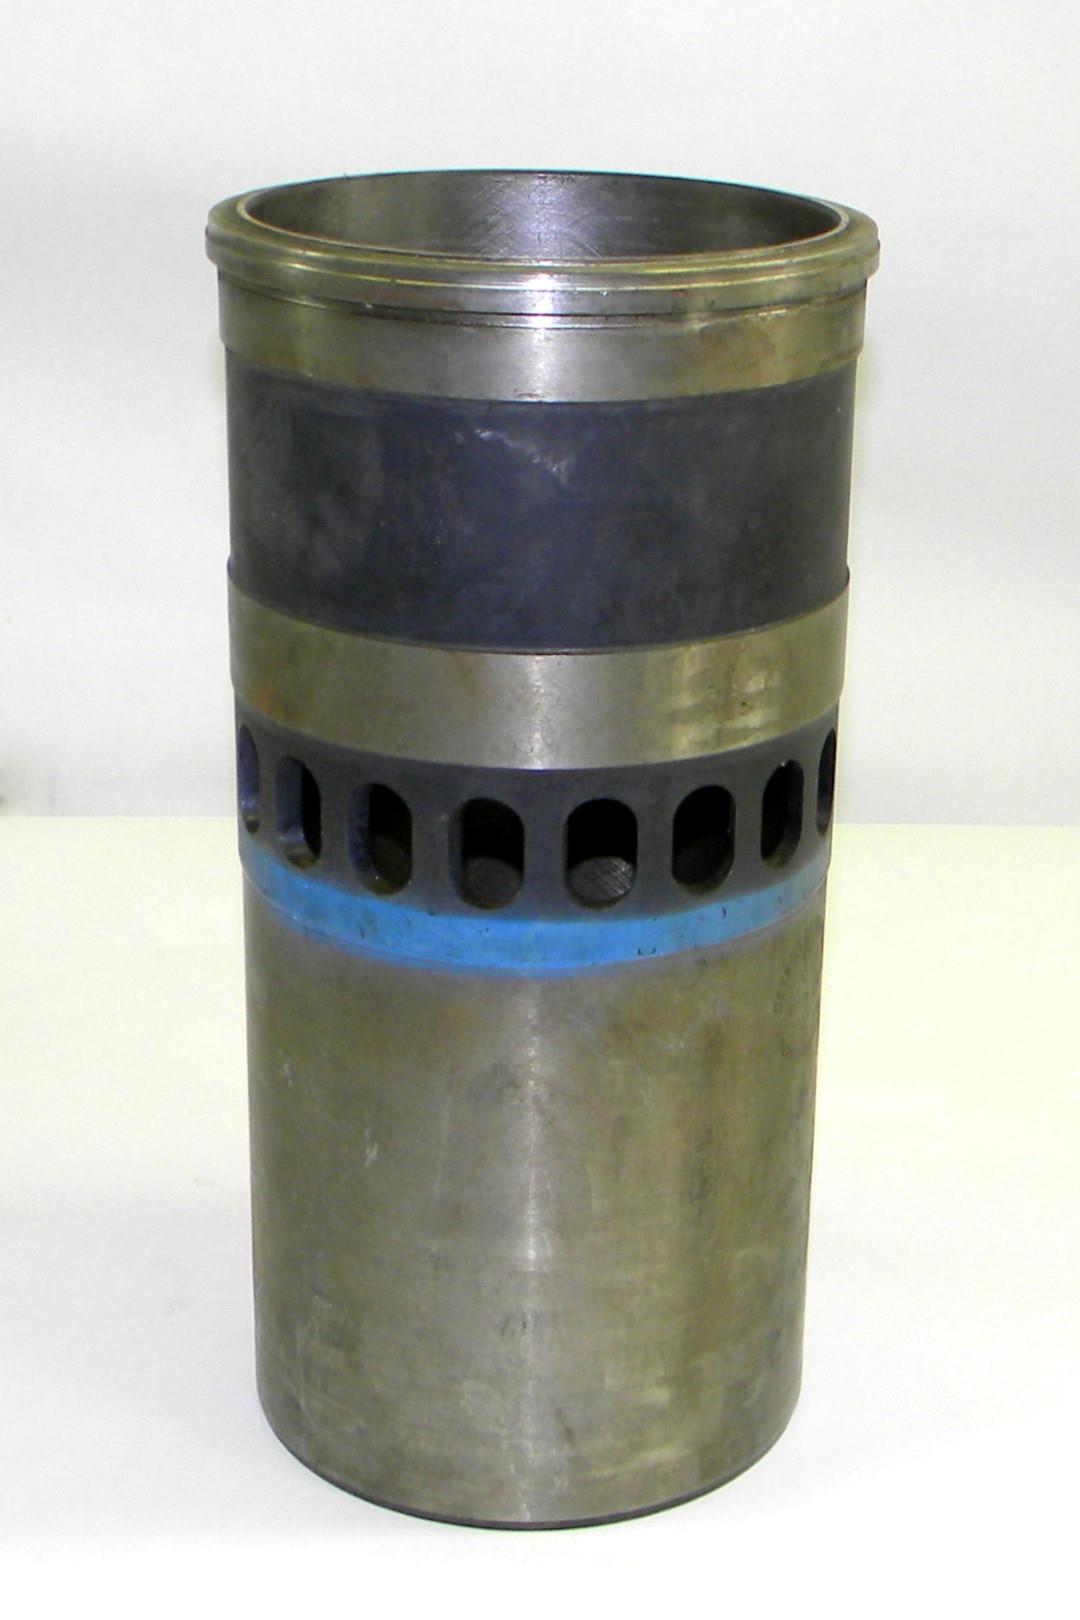 HEM-198 | 2815-01-117-8023 Detroit 8V92 Piston Cylinder Sleeve for M1070, HEMMT, MK48, and M911 (1).JPG